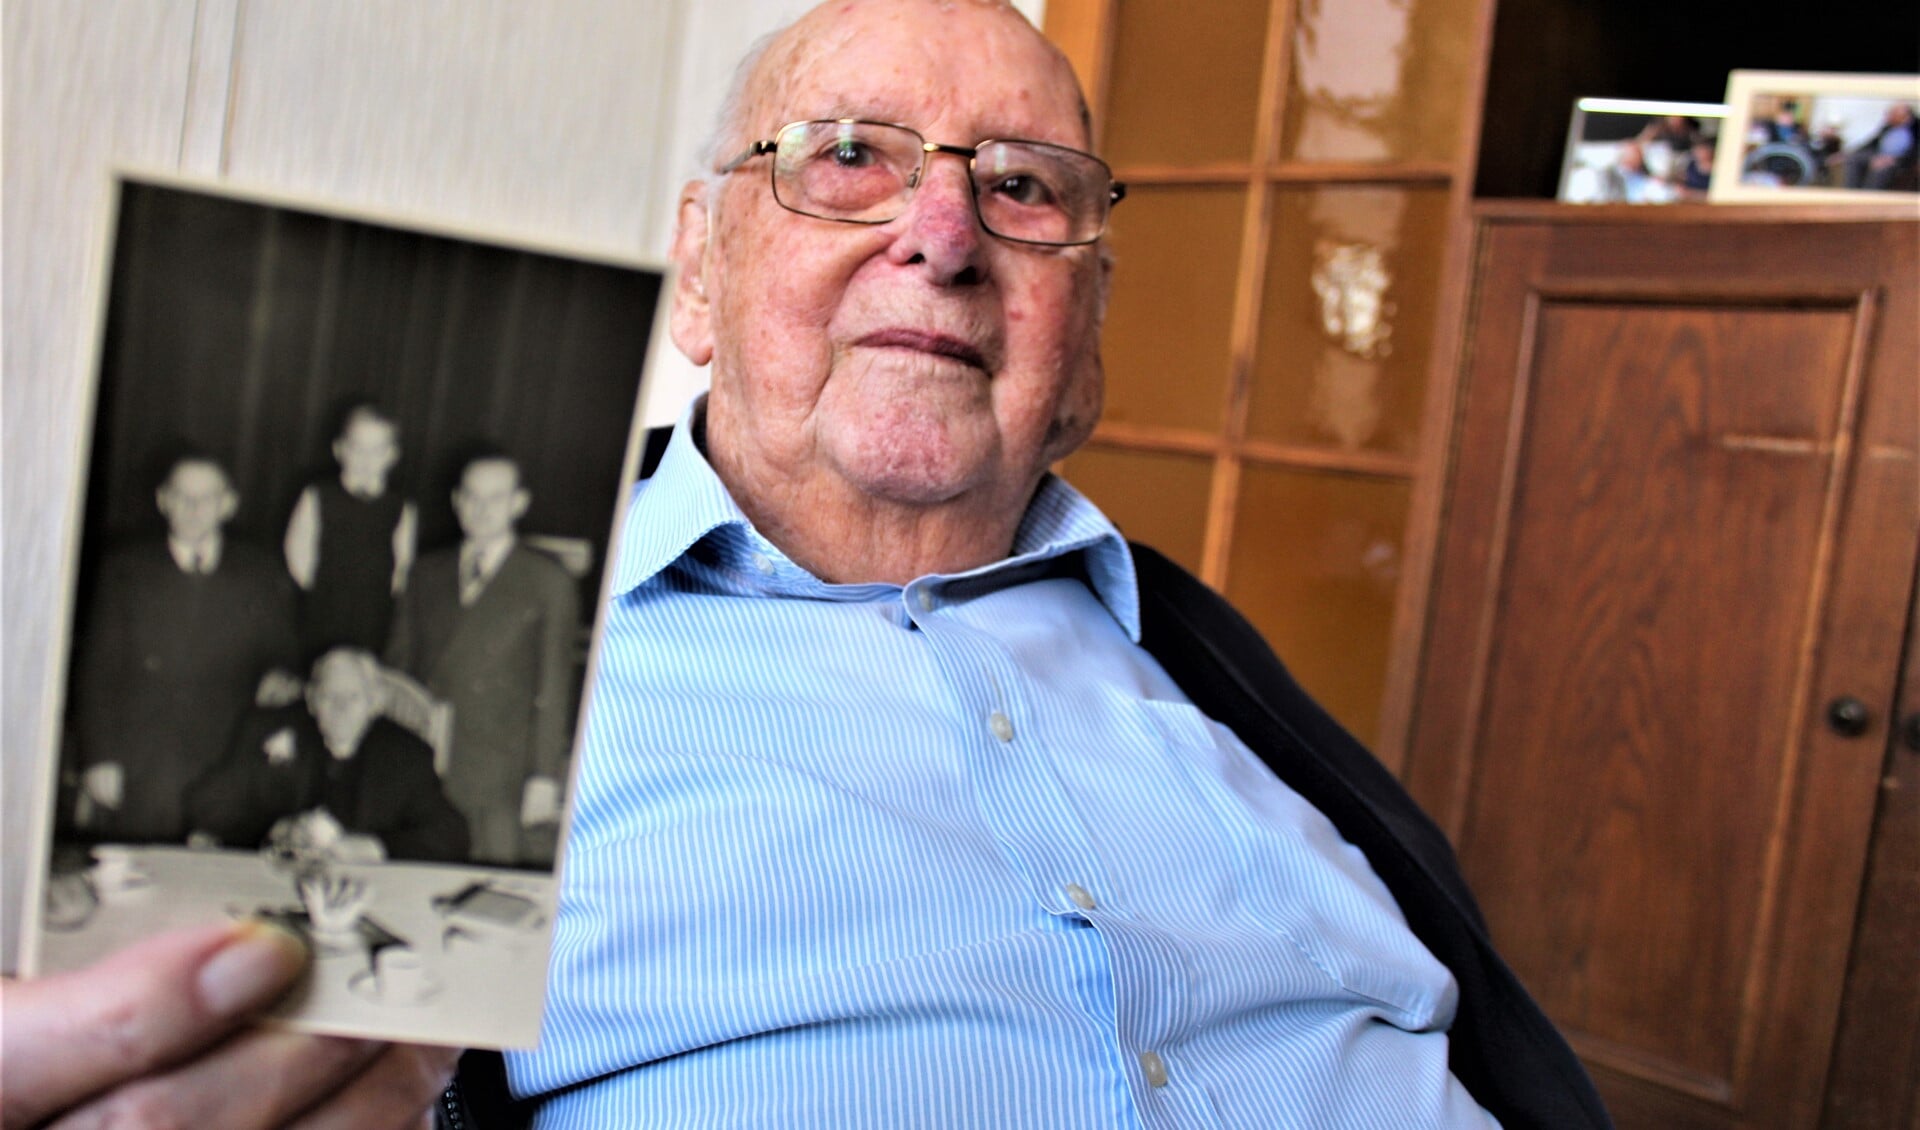 De heer Groenewegen toont een foto met daarop (zittend) zijn grootvader die ook 100 jaar oud werd (foto: Dick Janssen).